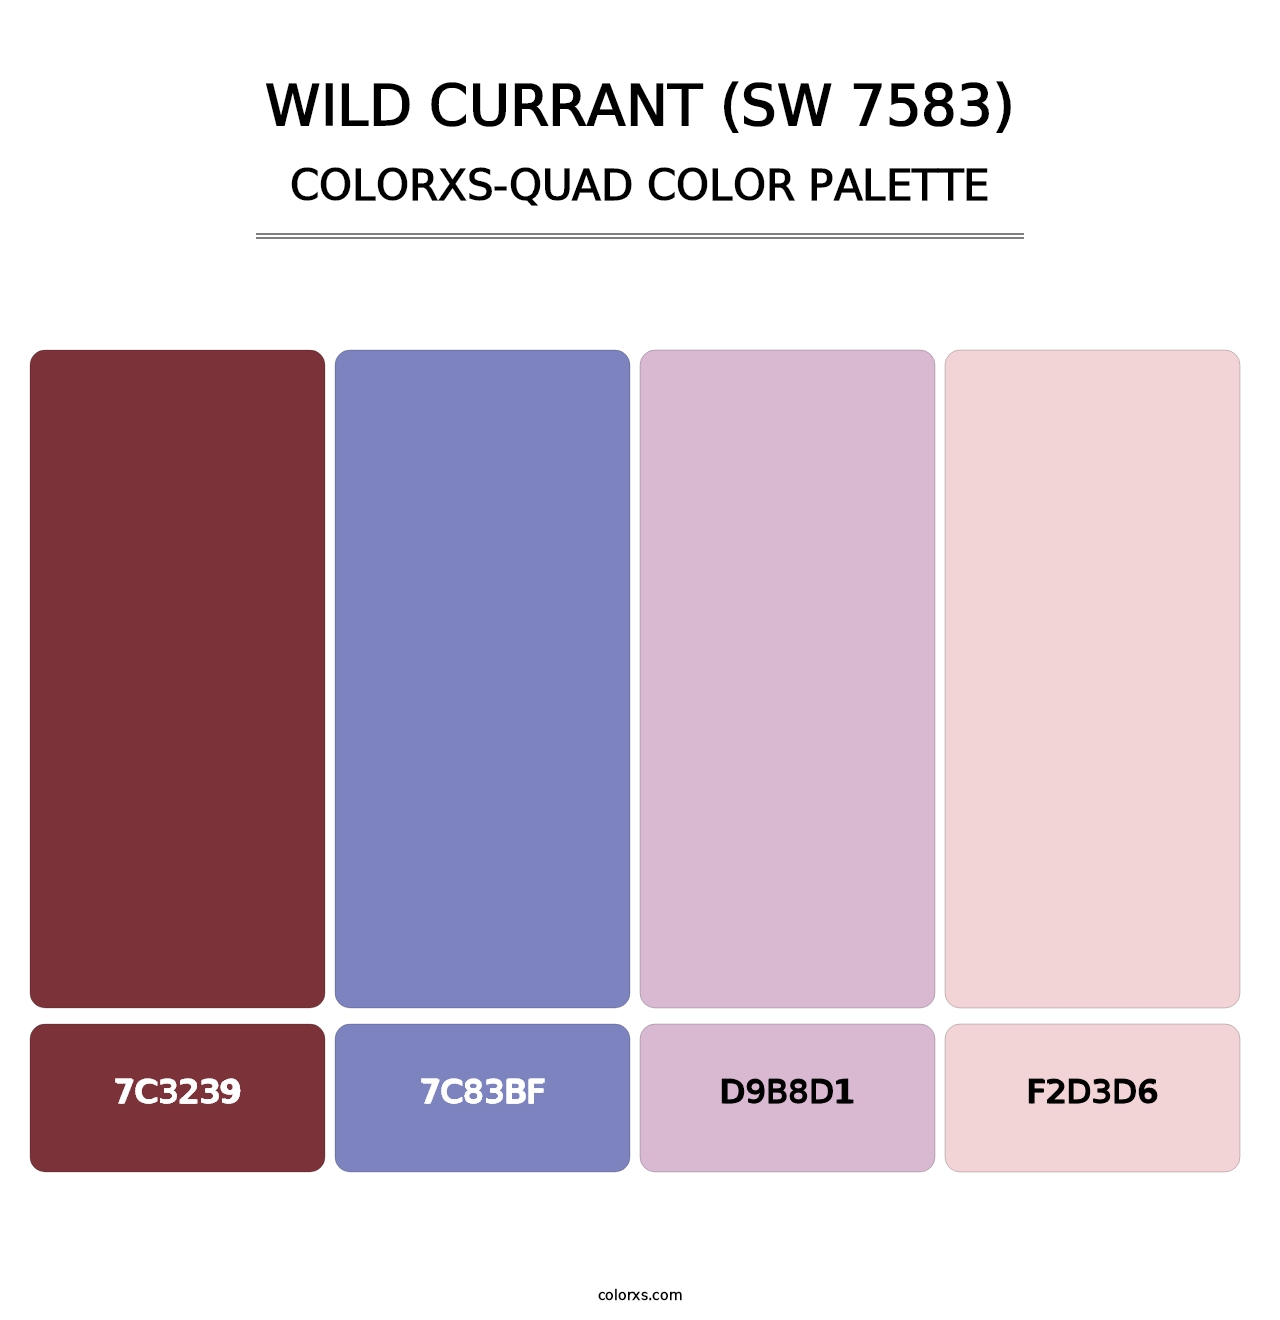 Wild Currant (SW 7583) - Colorxs Quad Palette